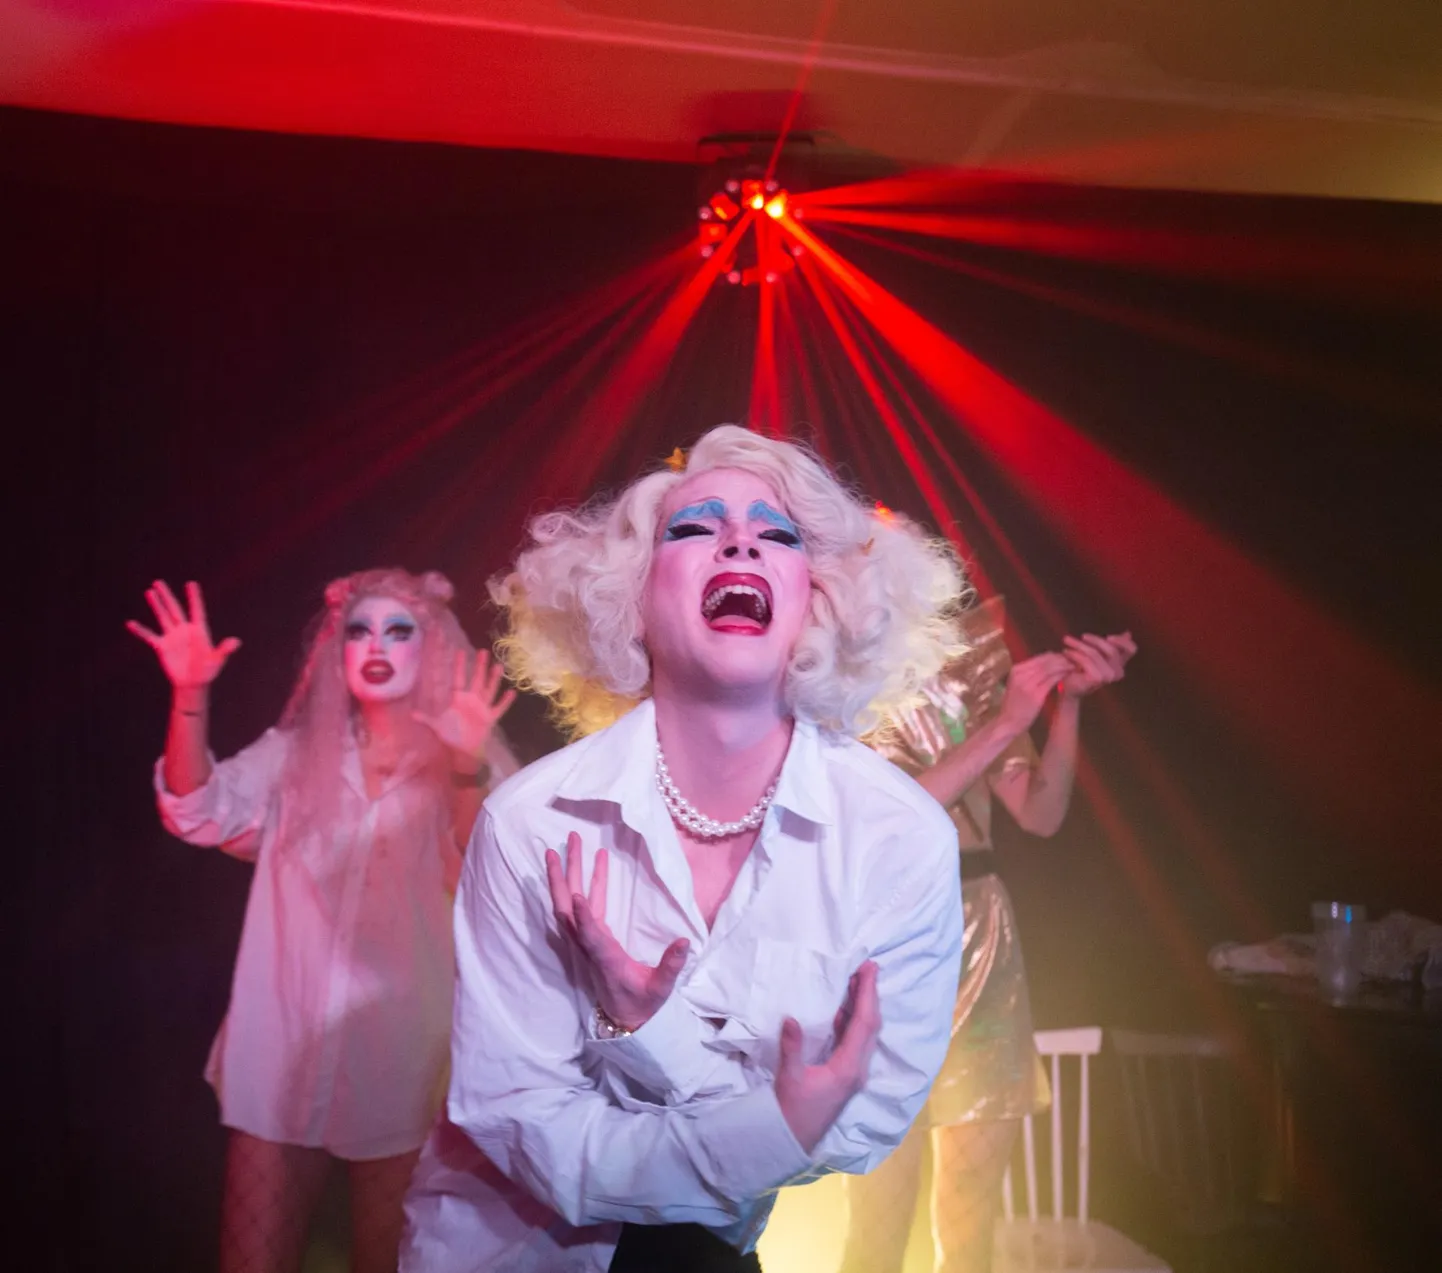 Soome drag-artistide punt tuli Viljandisse vaid korraks, et näidata siinsele publikule midagi teistsugust. Etenduse teostamise olid enda peale võtnud kultuuriakadeema teise kursuse kultuurikorraldajad.